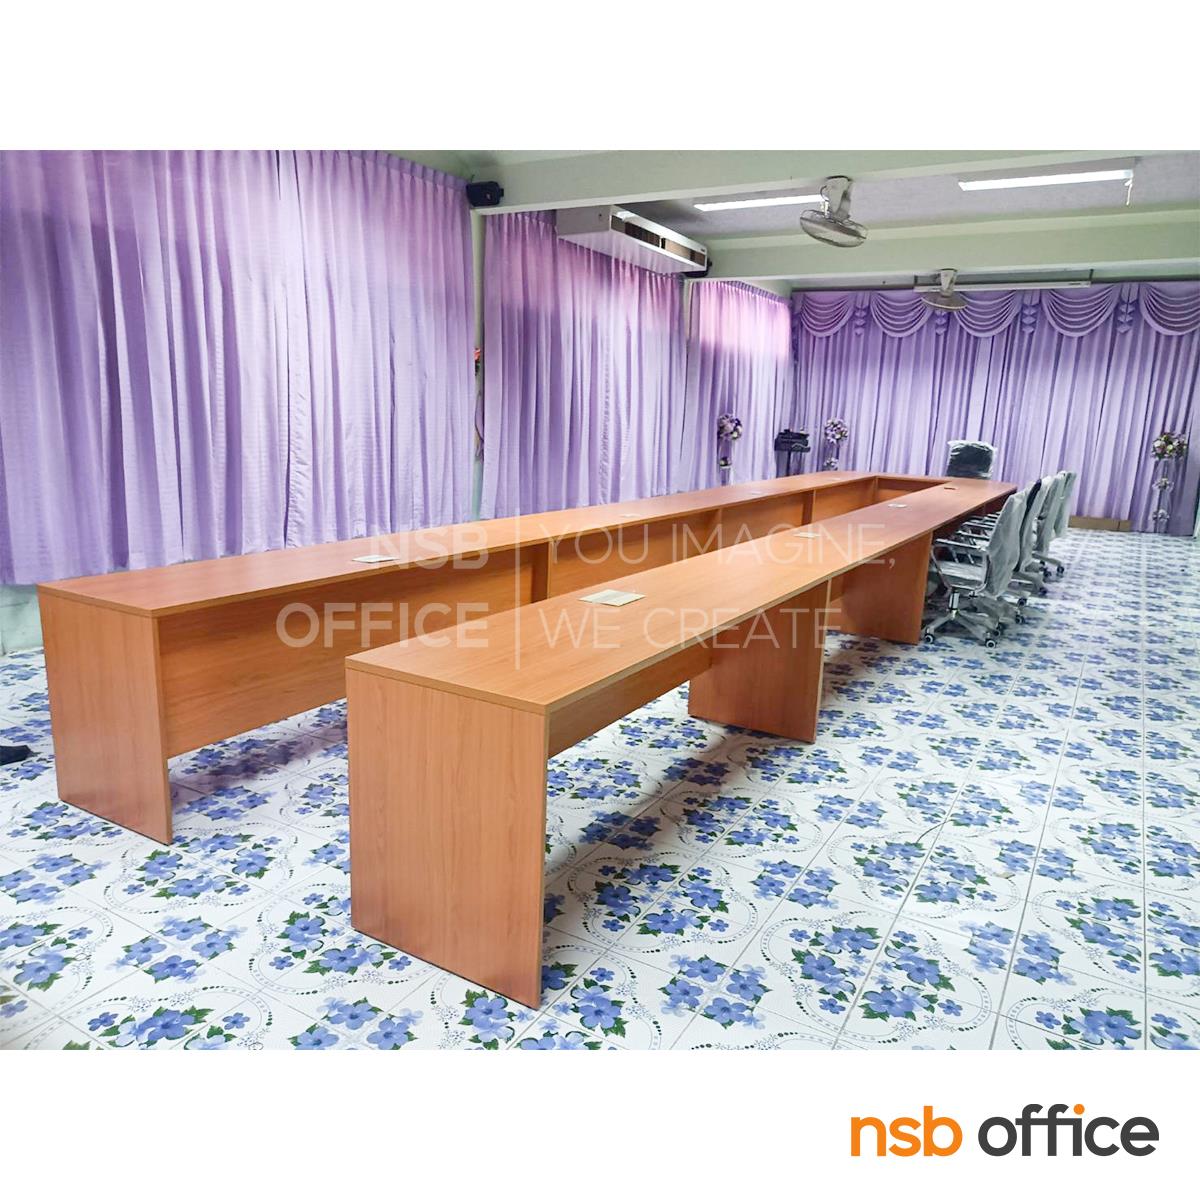 โต๊ะประชุมหน้าตรง 60D cm.  ขนาด 80W ,120W ,150W ,180W ,210W cm. เมลามีน